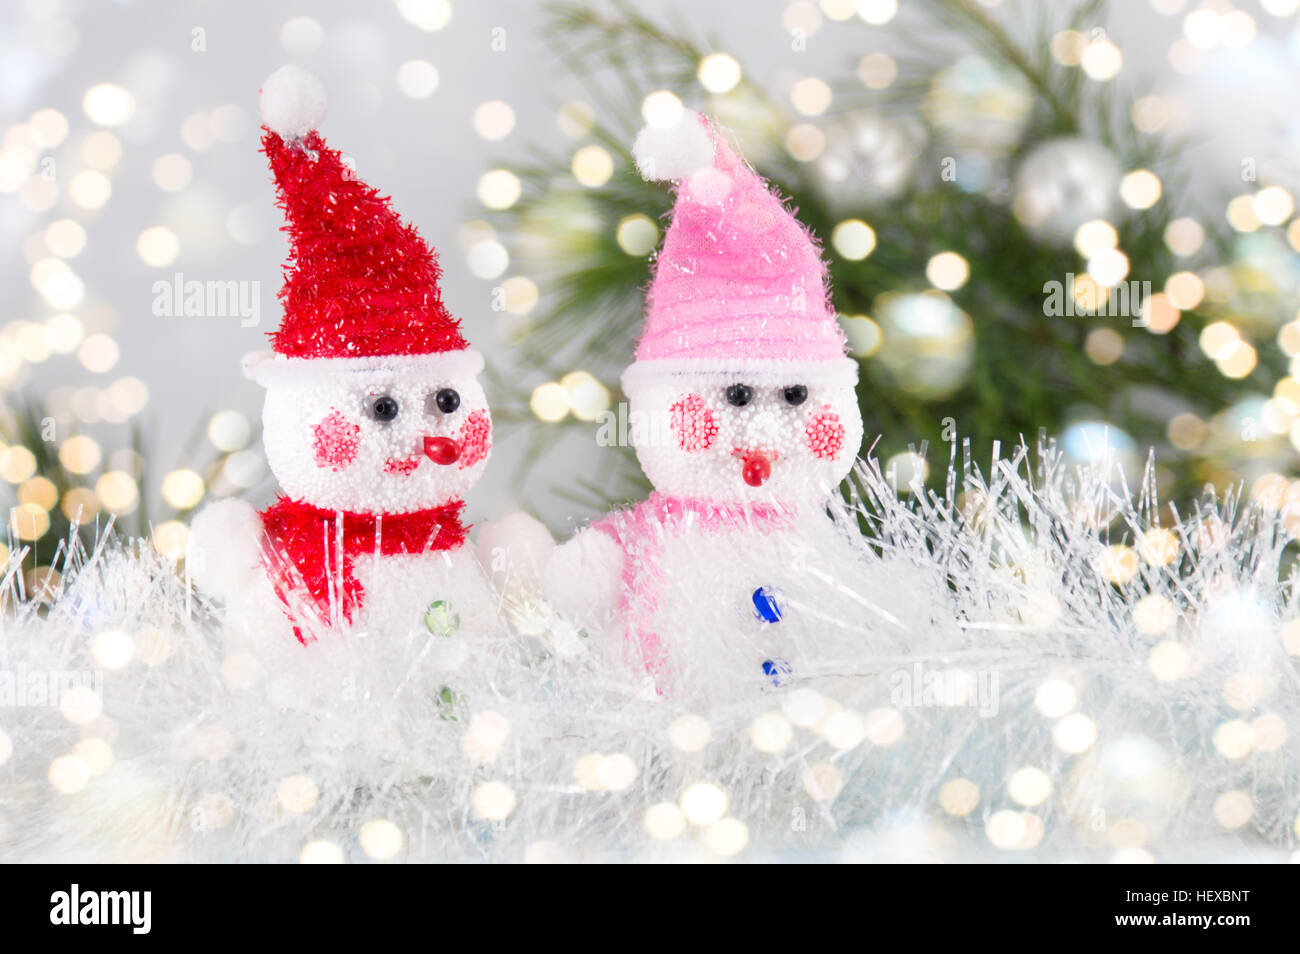 Dos toy snowman con antecedentes navideños Foto de stock